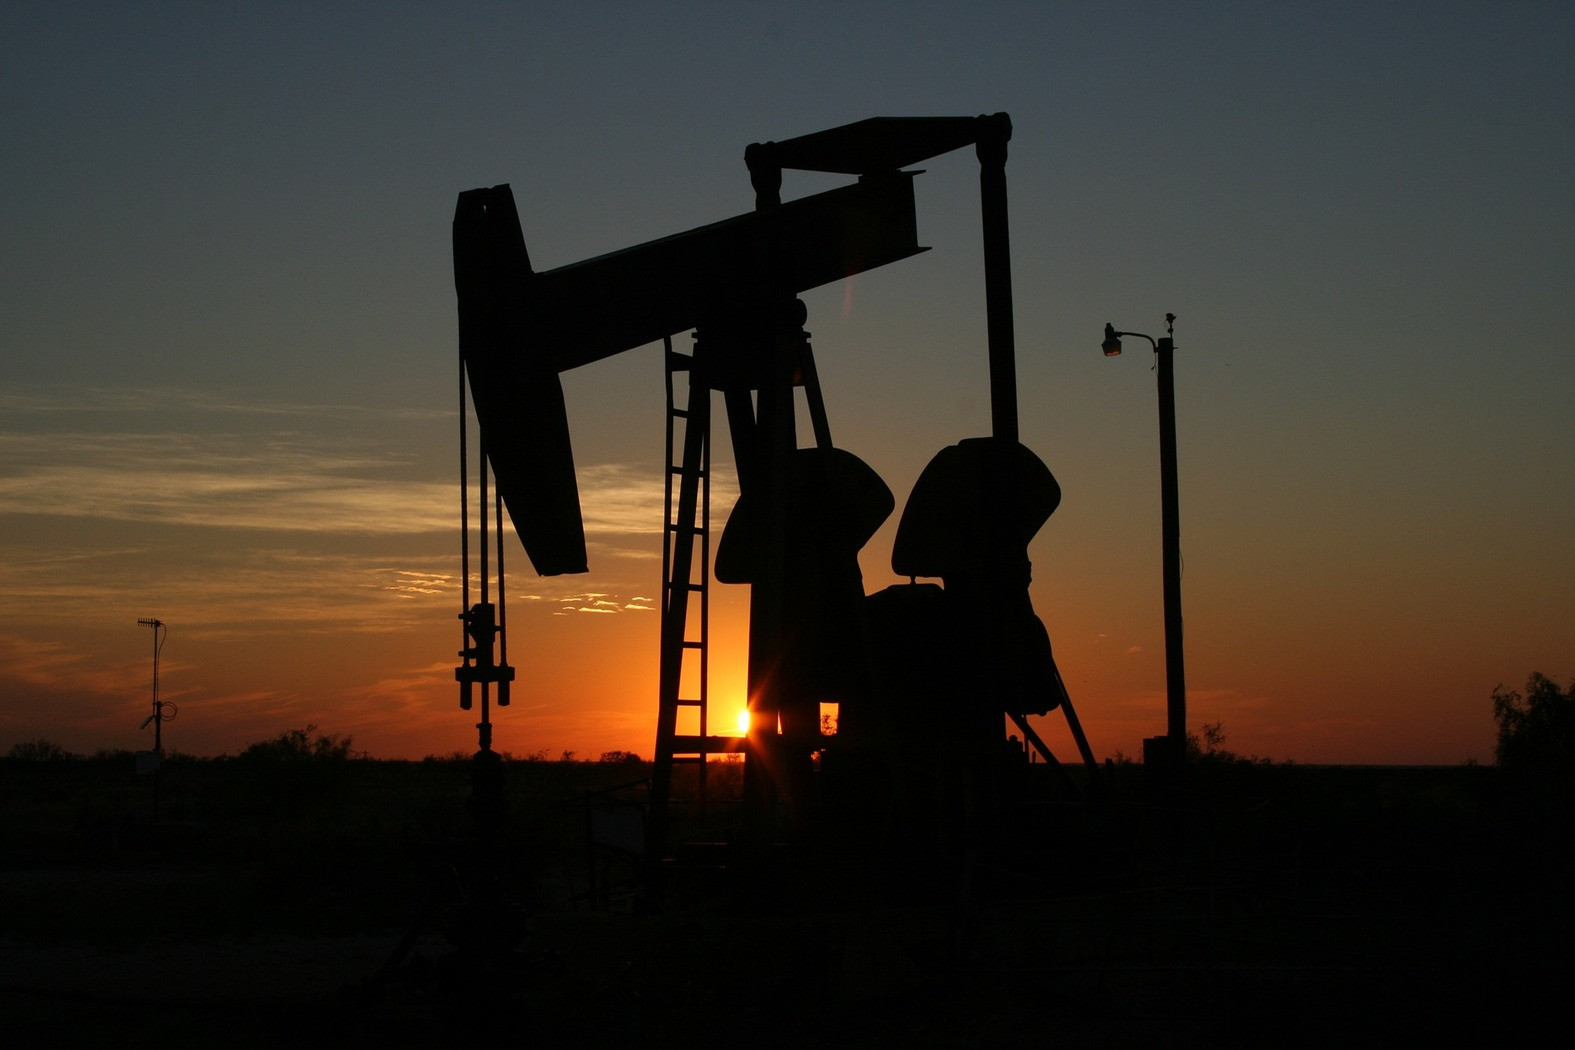 Λιβύη: Ανεστάλη η παραγωγή σε μεγάλο πετρελαϊκό κοίτασμα